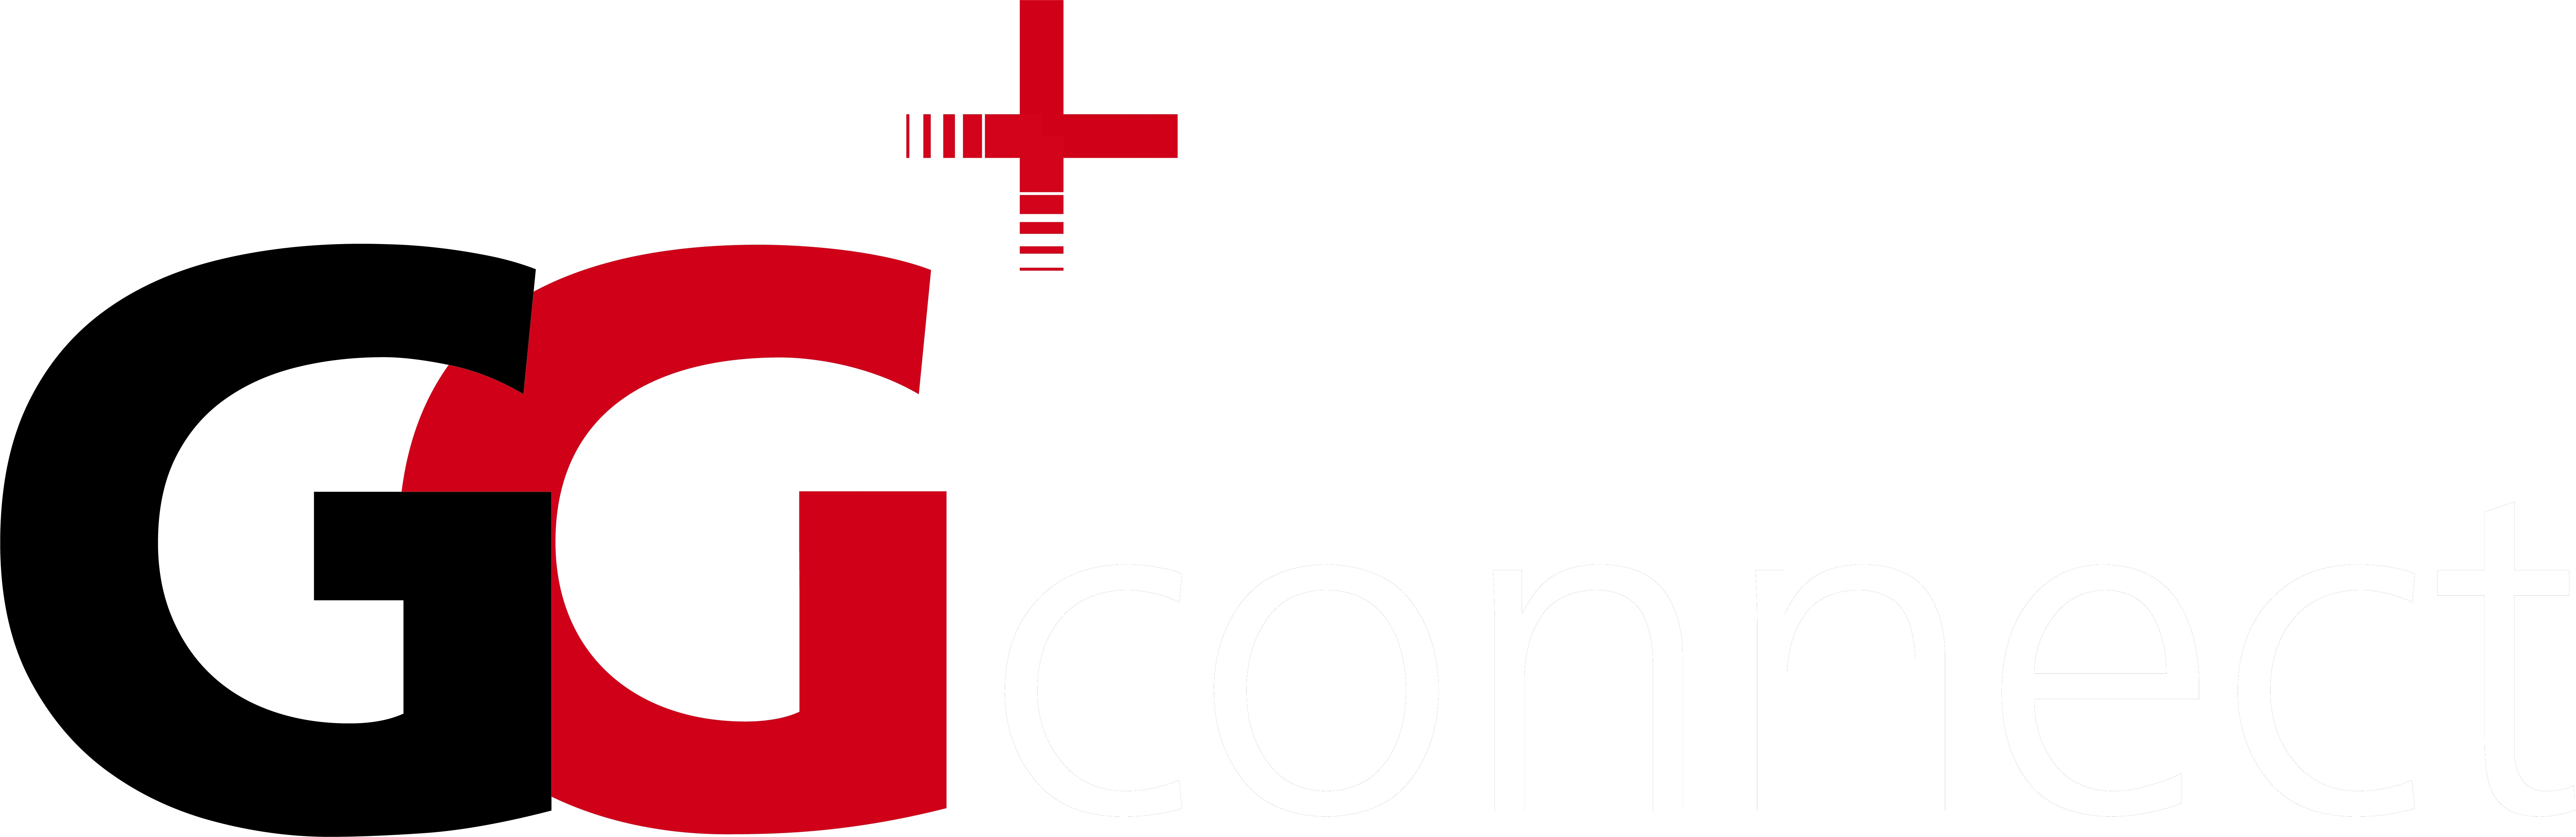 GG+connect_Logo